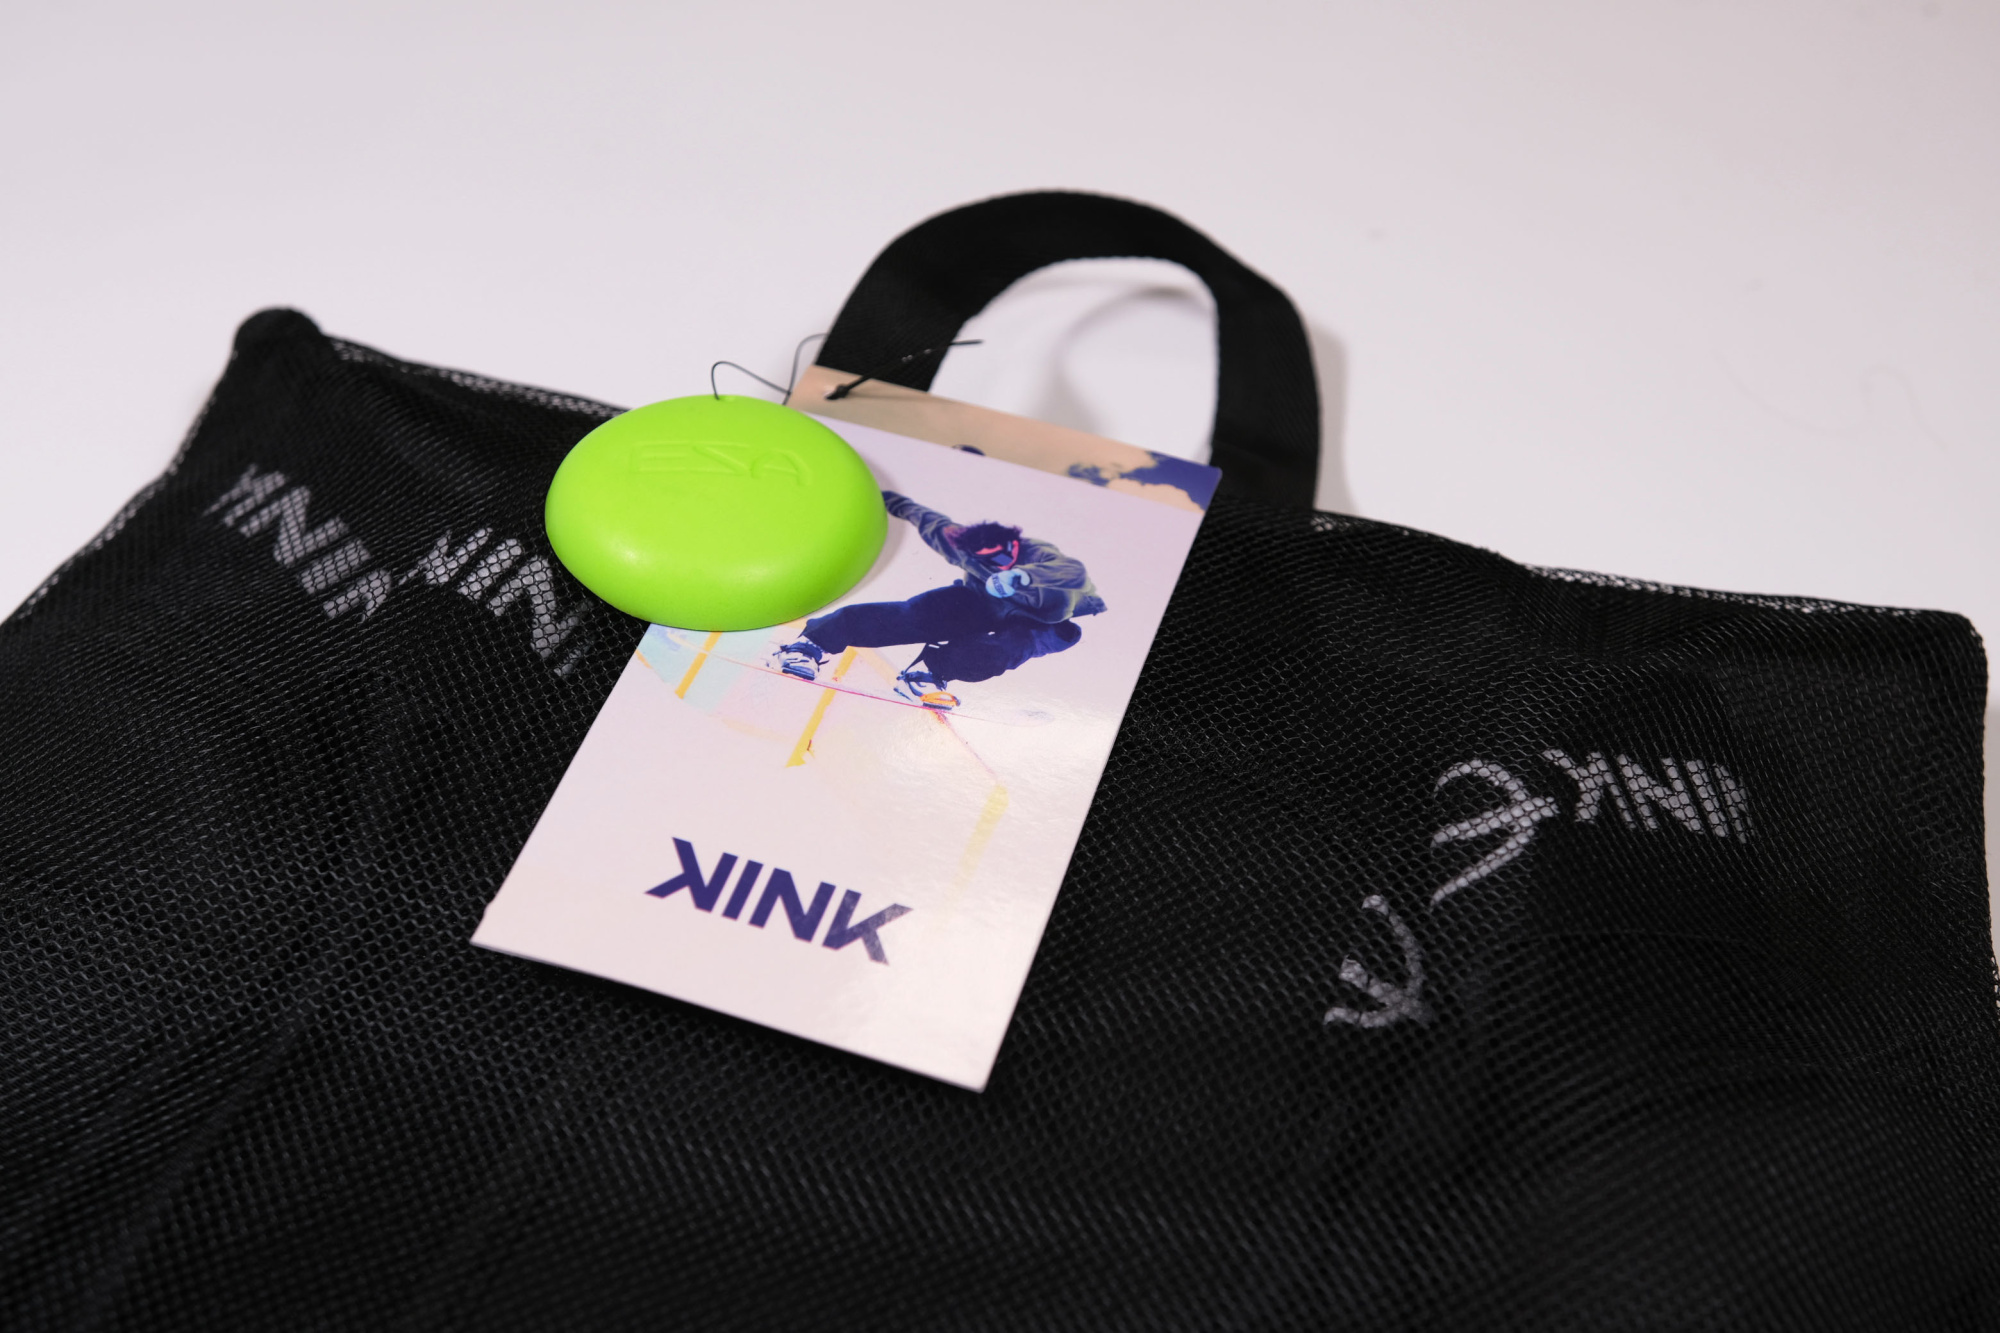 Защитные шорты Kink Short Protector ESA